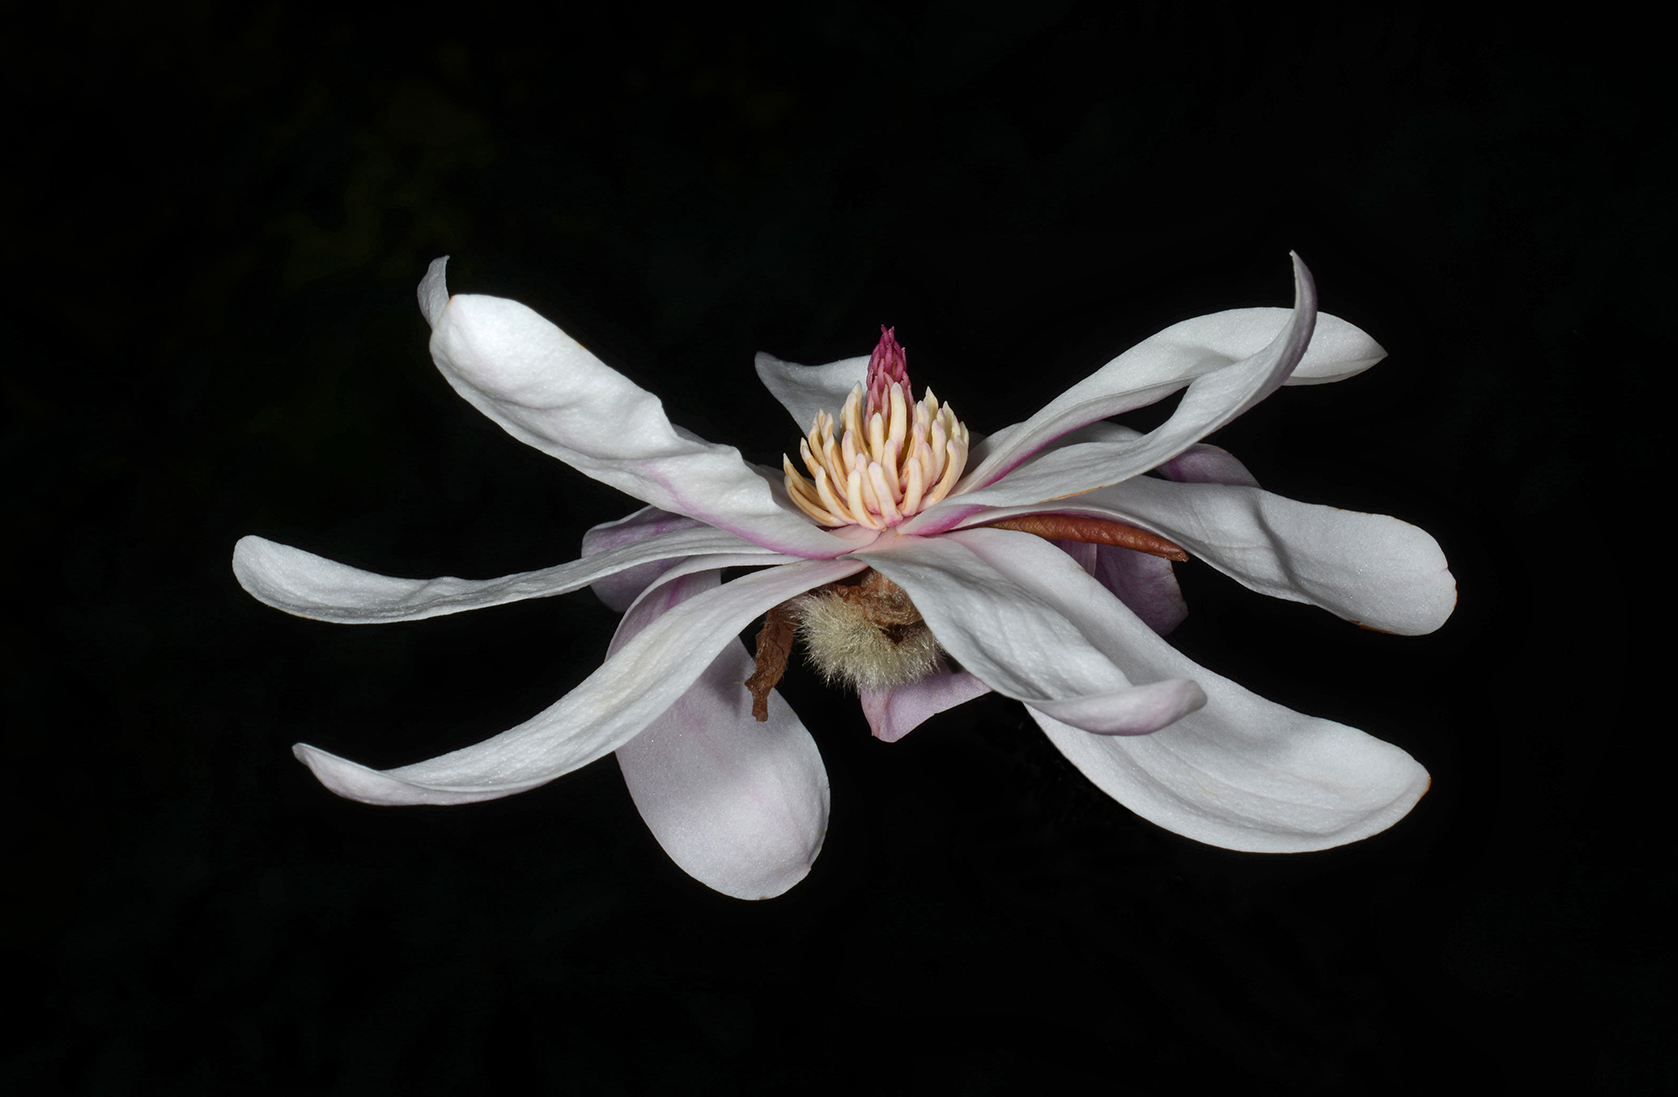  Star magnolia 